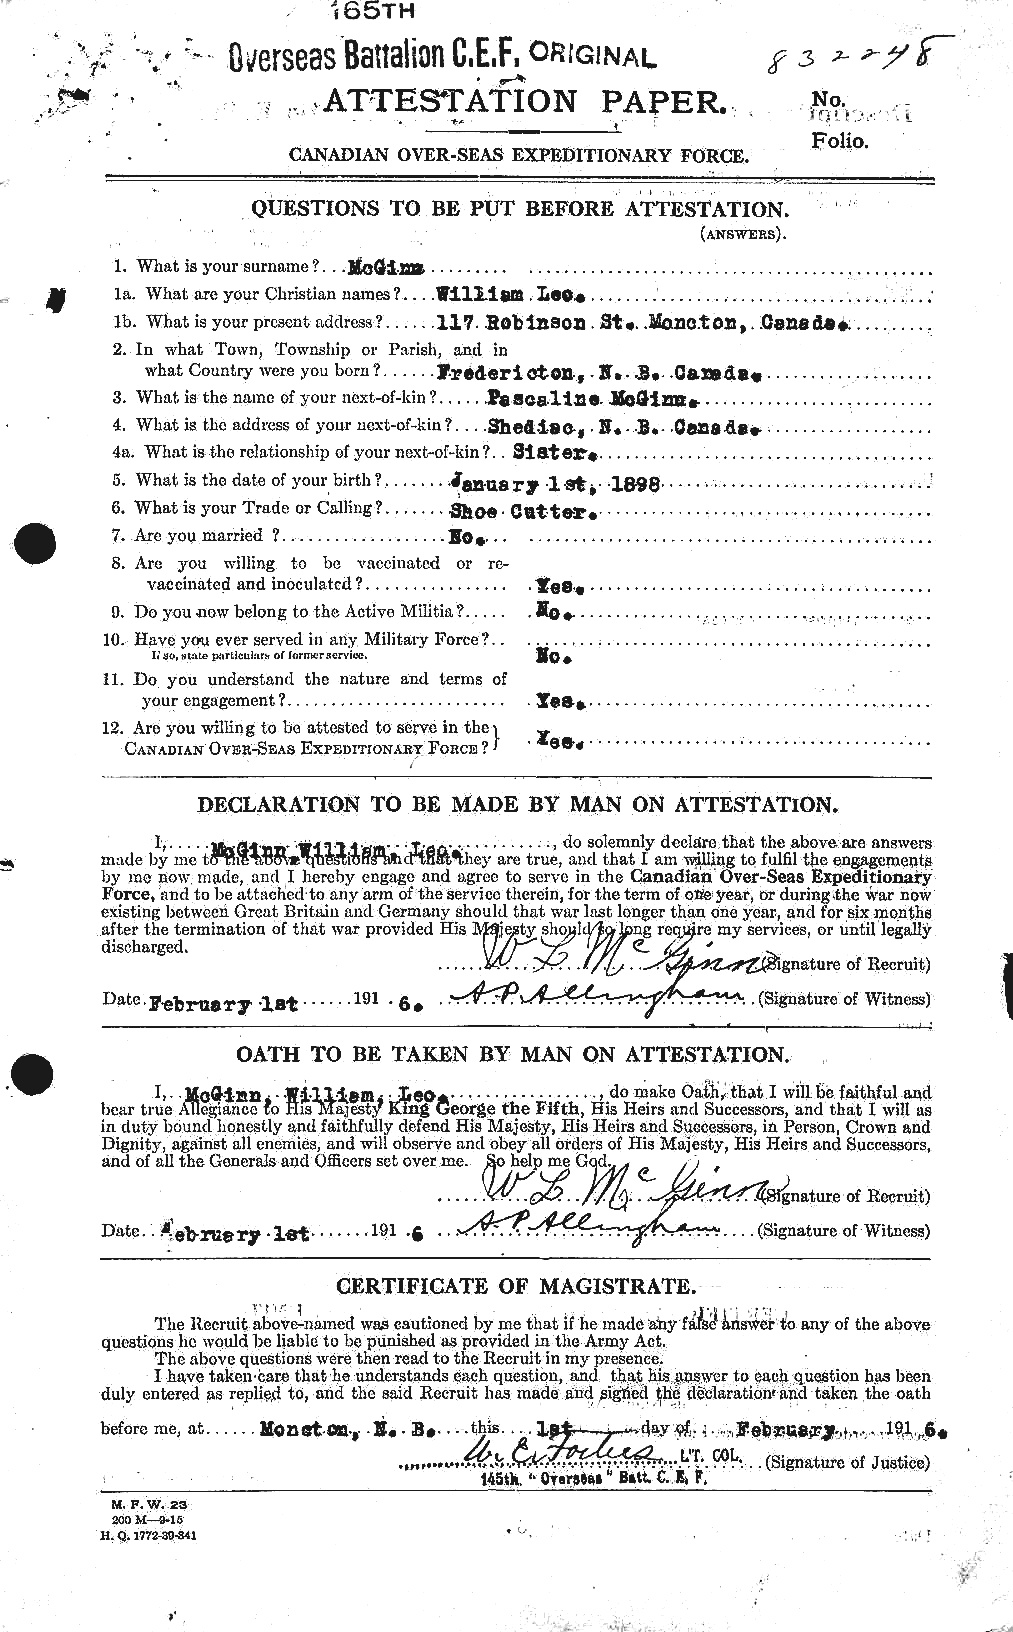 Dossiers du Personnel de la Première Guerre mondiale - CEC 526354a